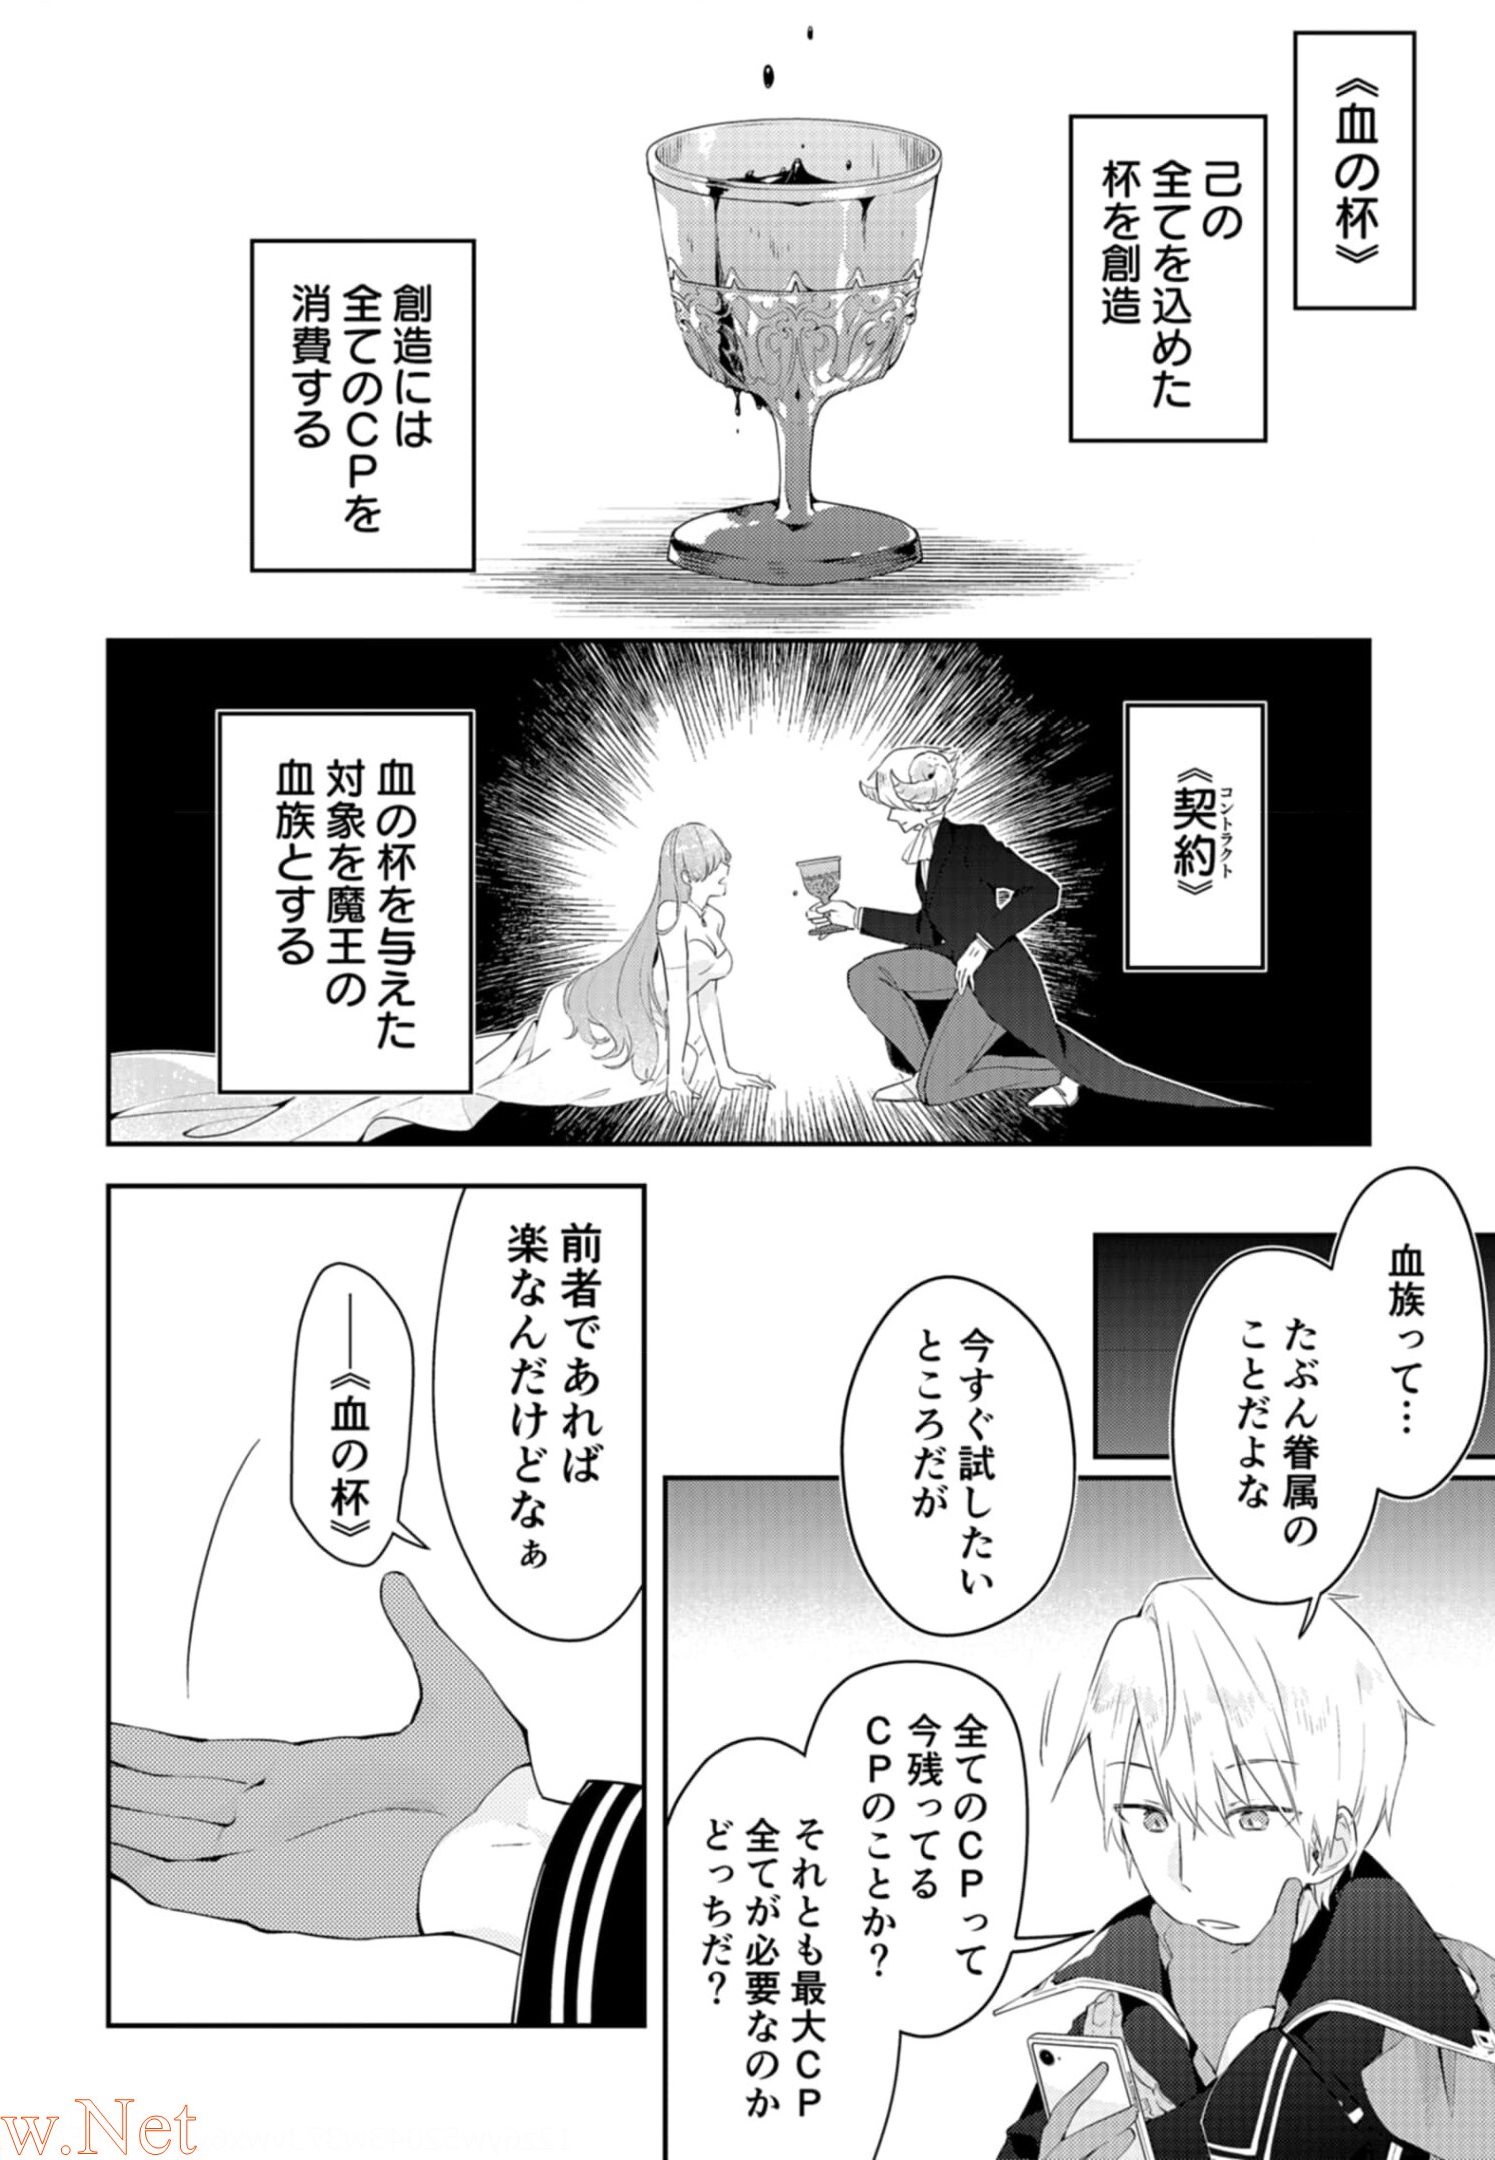 Dungeon Battle Royale ~Maou ni Nattanode Sekai Touitsu wo Mezashimasu~ - Chapter 9 - Page 2